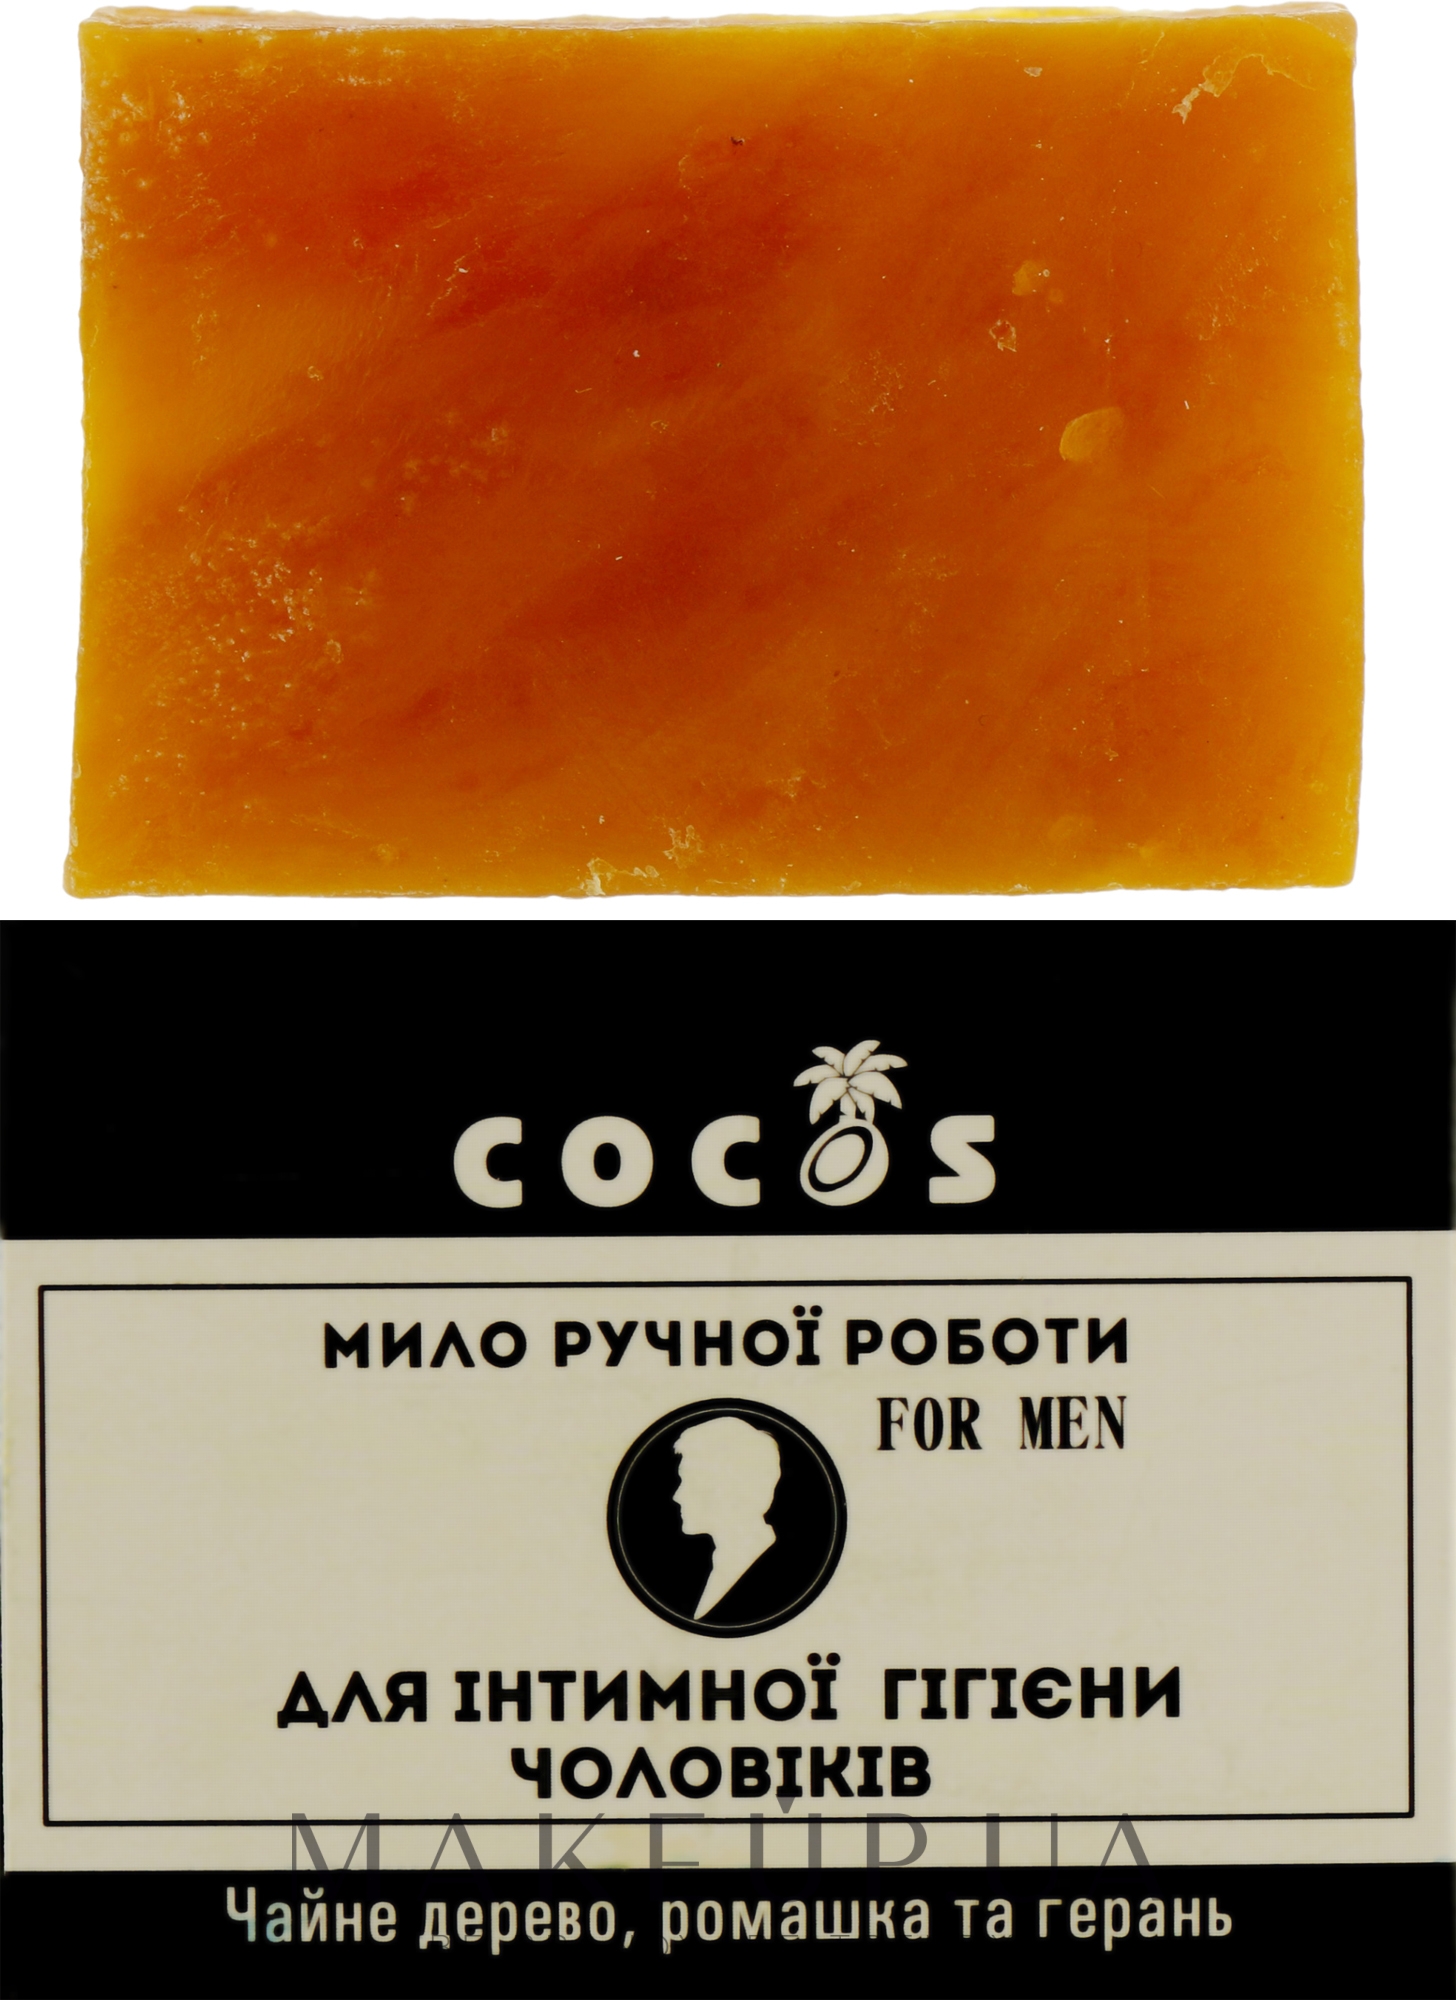 Мыло ручной работы для интимной гигиены мужчин - Cocos — фото 55g